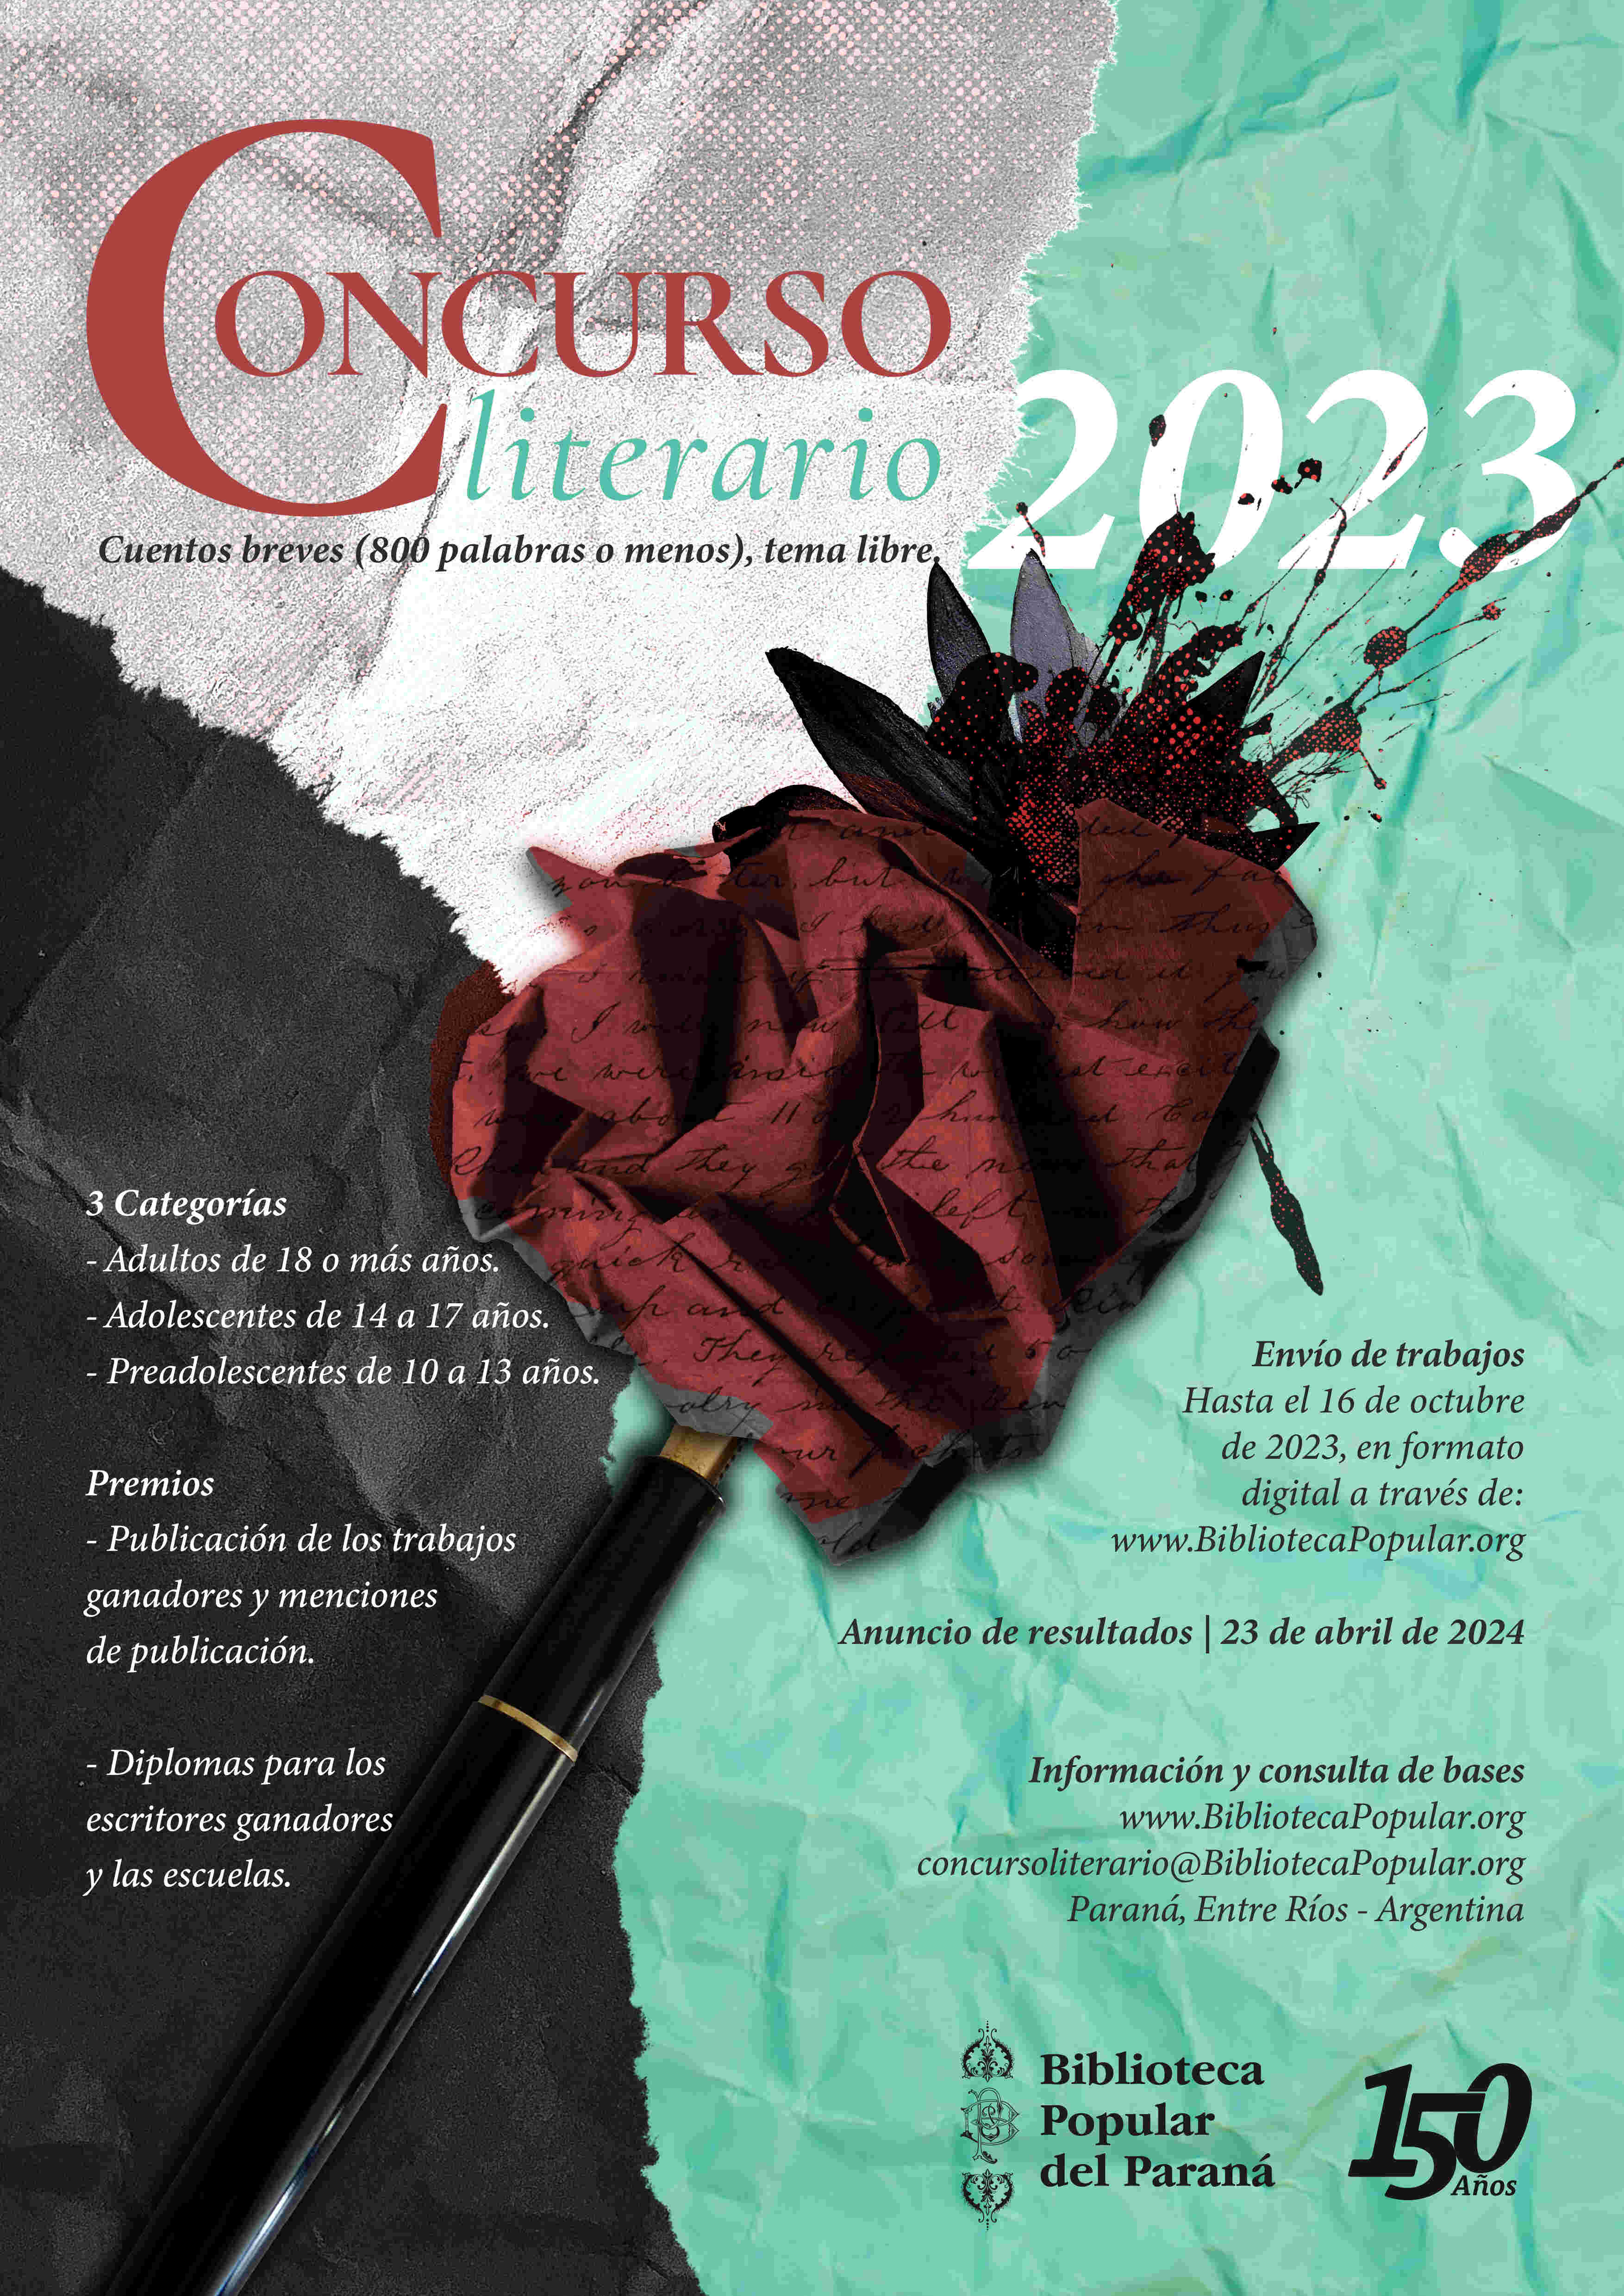 Afiche promocional del Concurso Biblioteca Popular del Paraná, Edición 2023